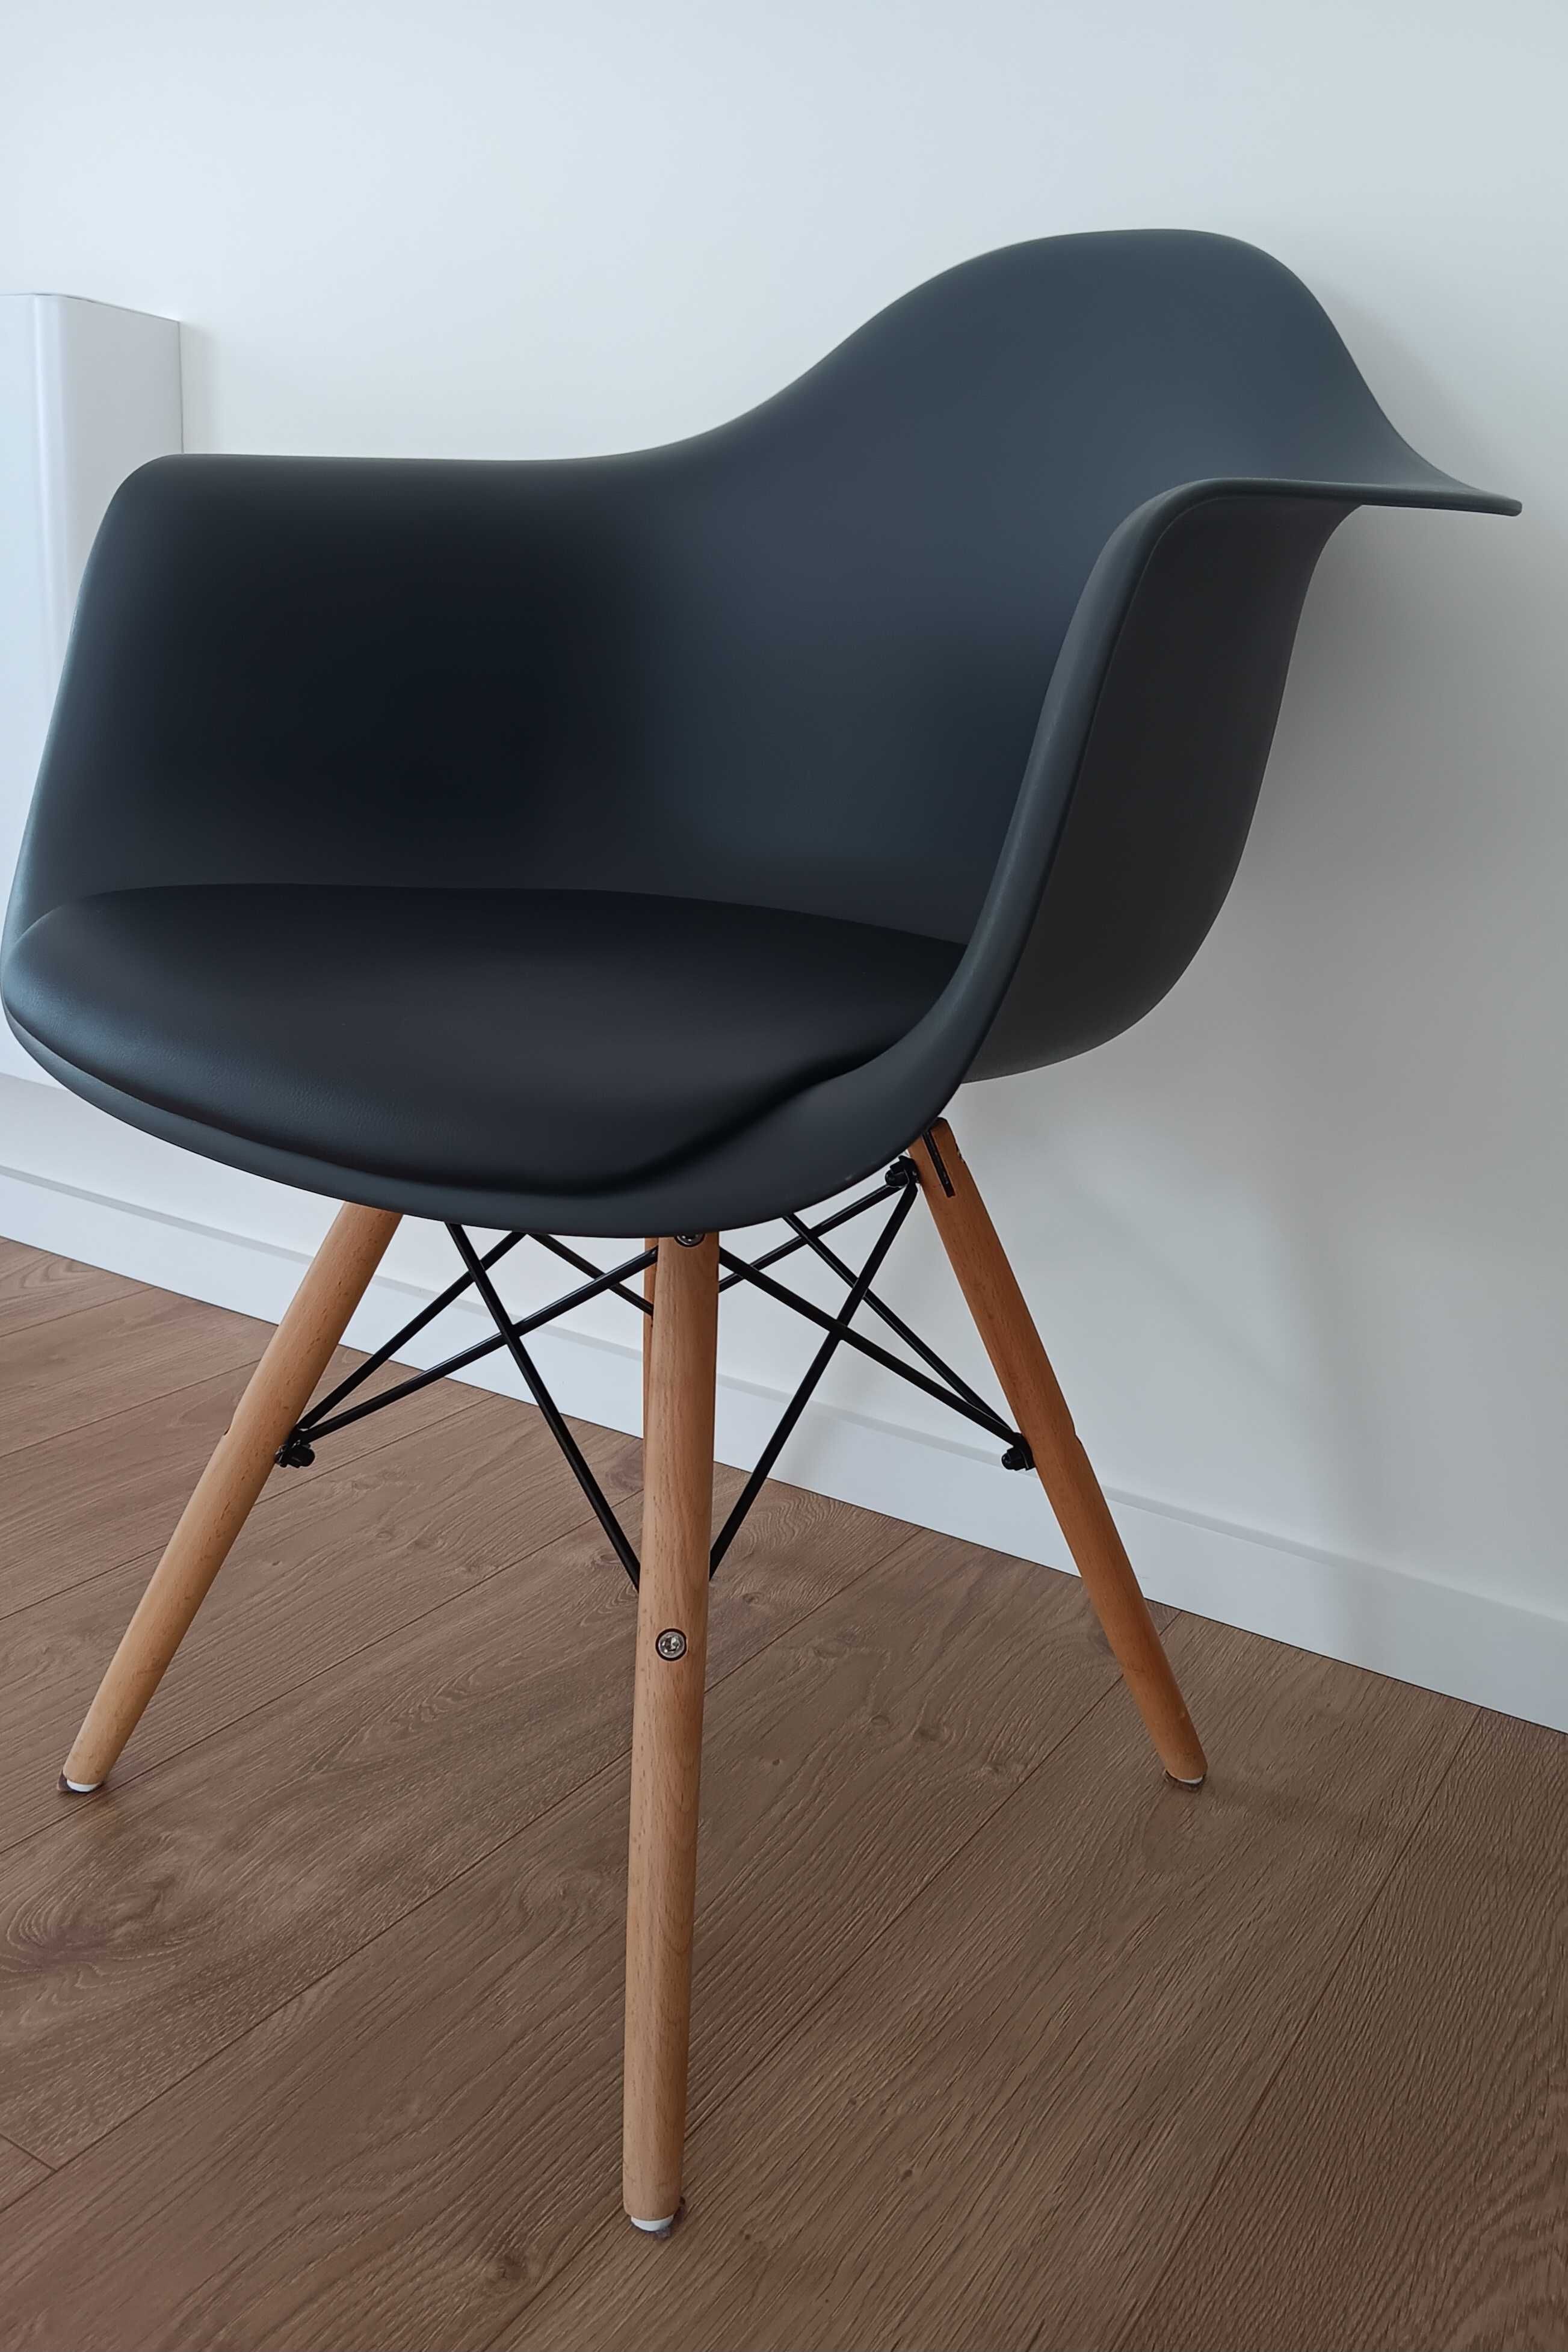 Seis Cadeiras cinza estilo nórdico, com braços